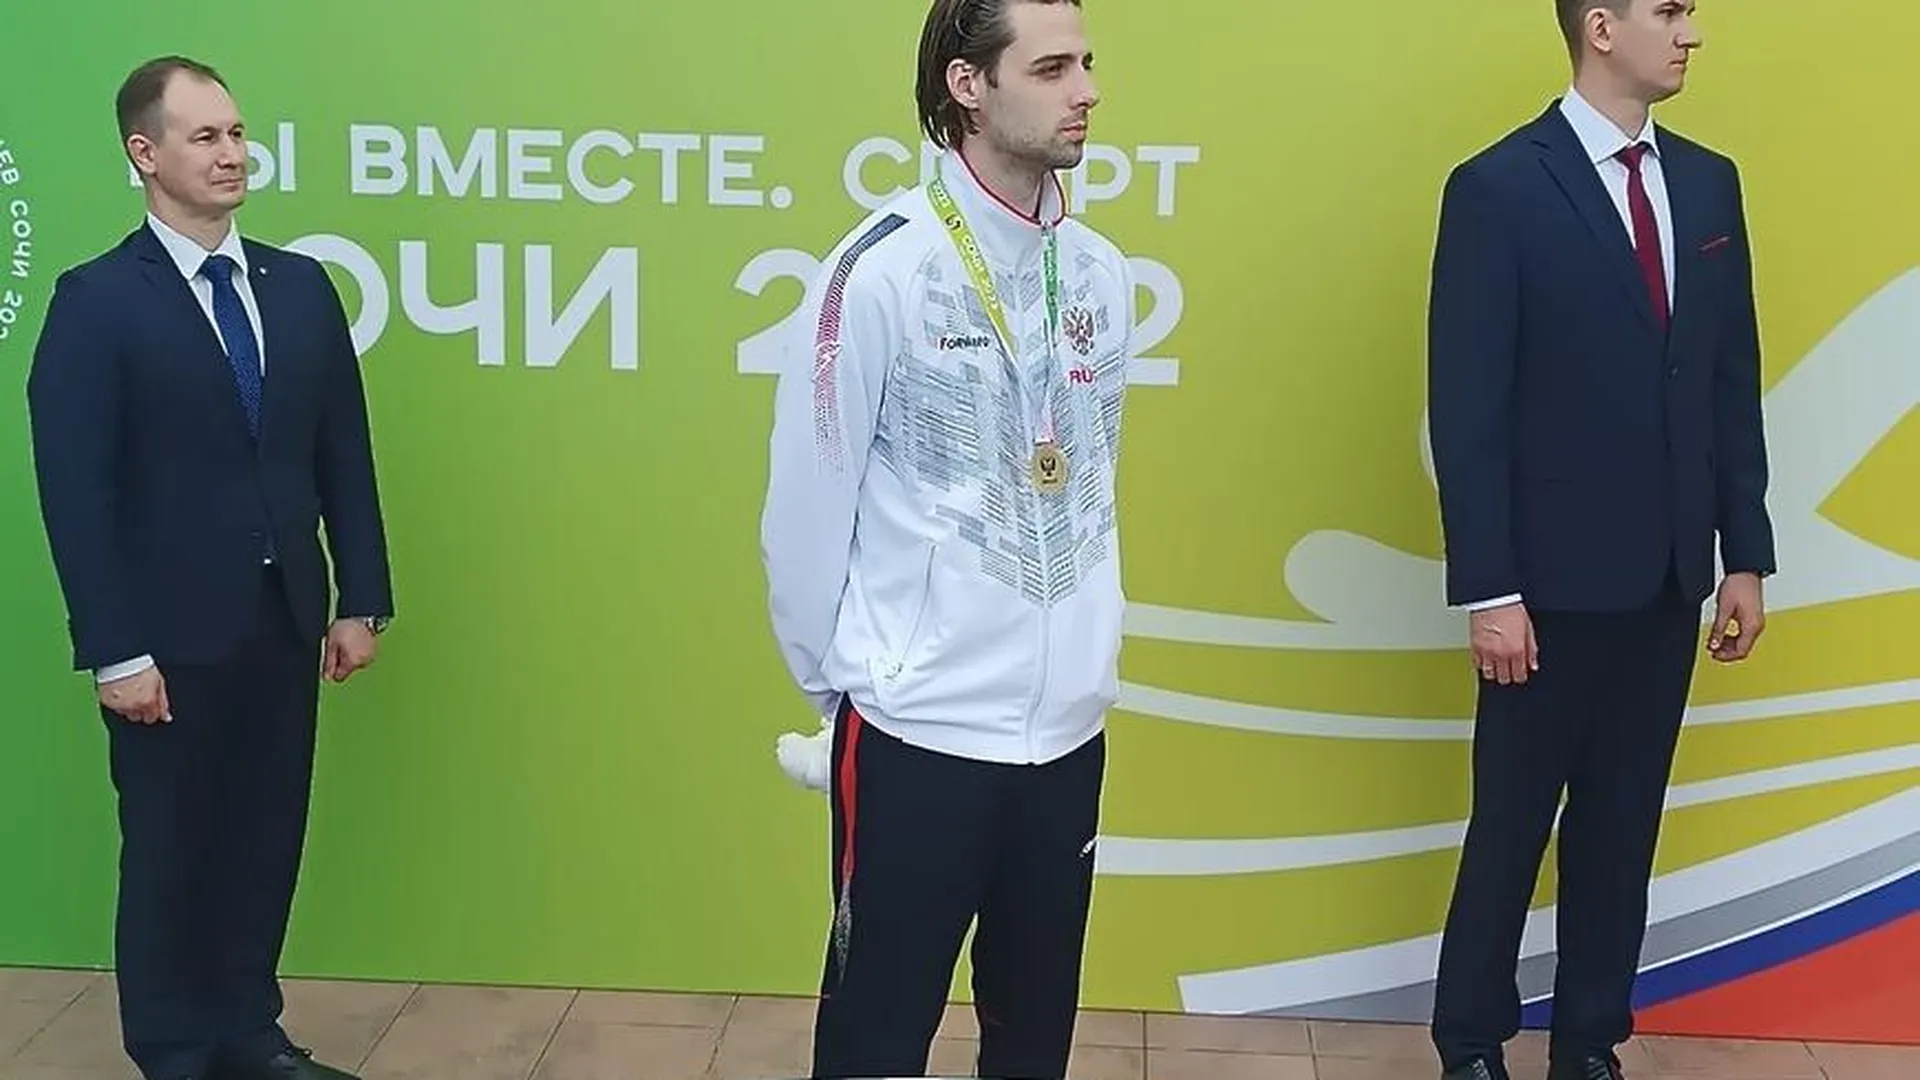 Комплект медалей завоевал спортсмен из Балашихи на играх паралимпийцев «Мы вместе. Спорт»